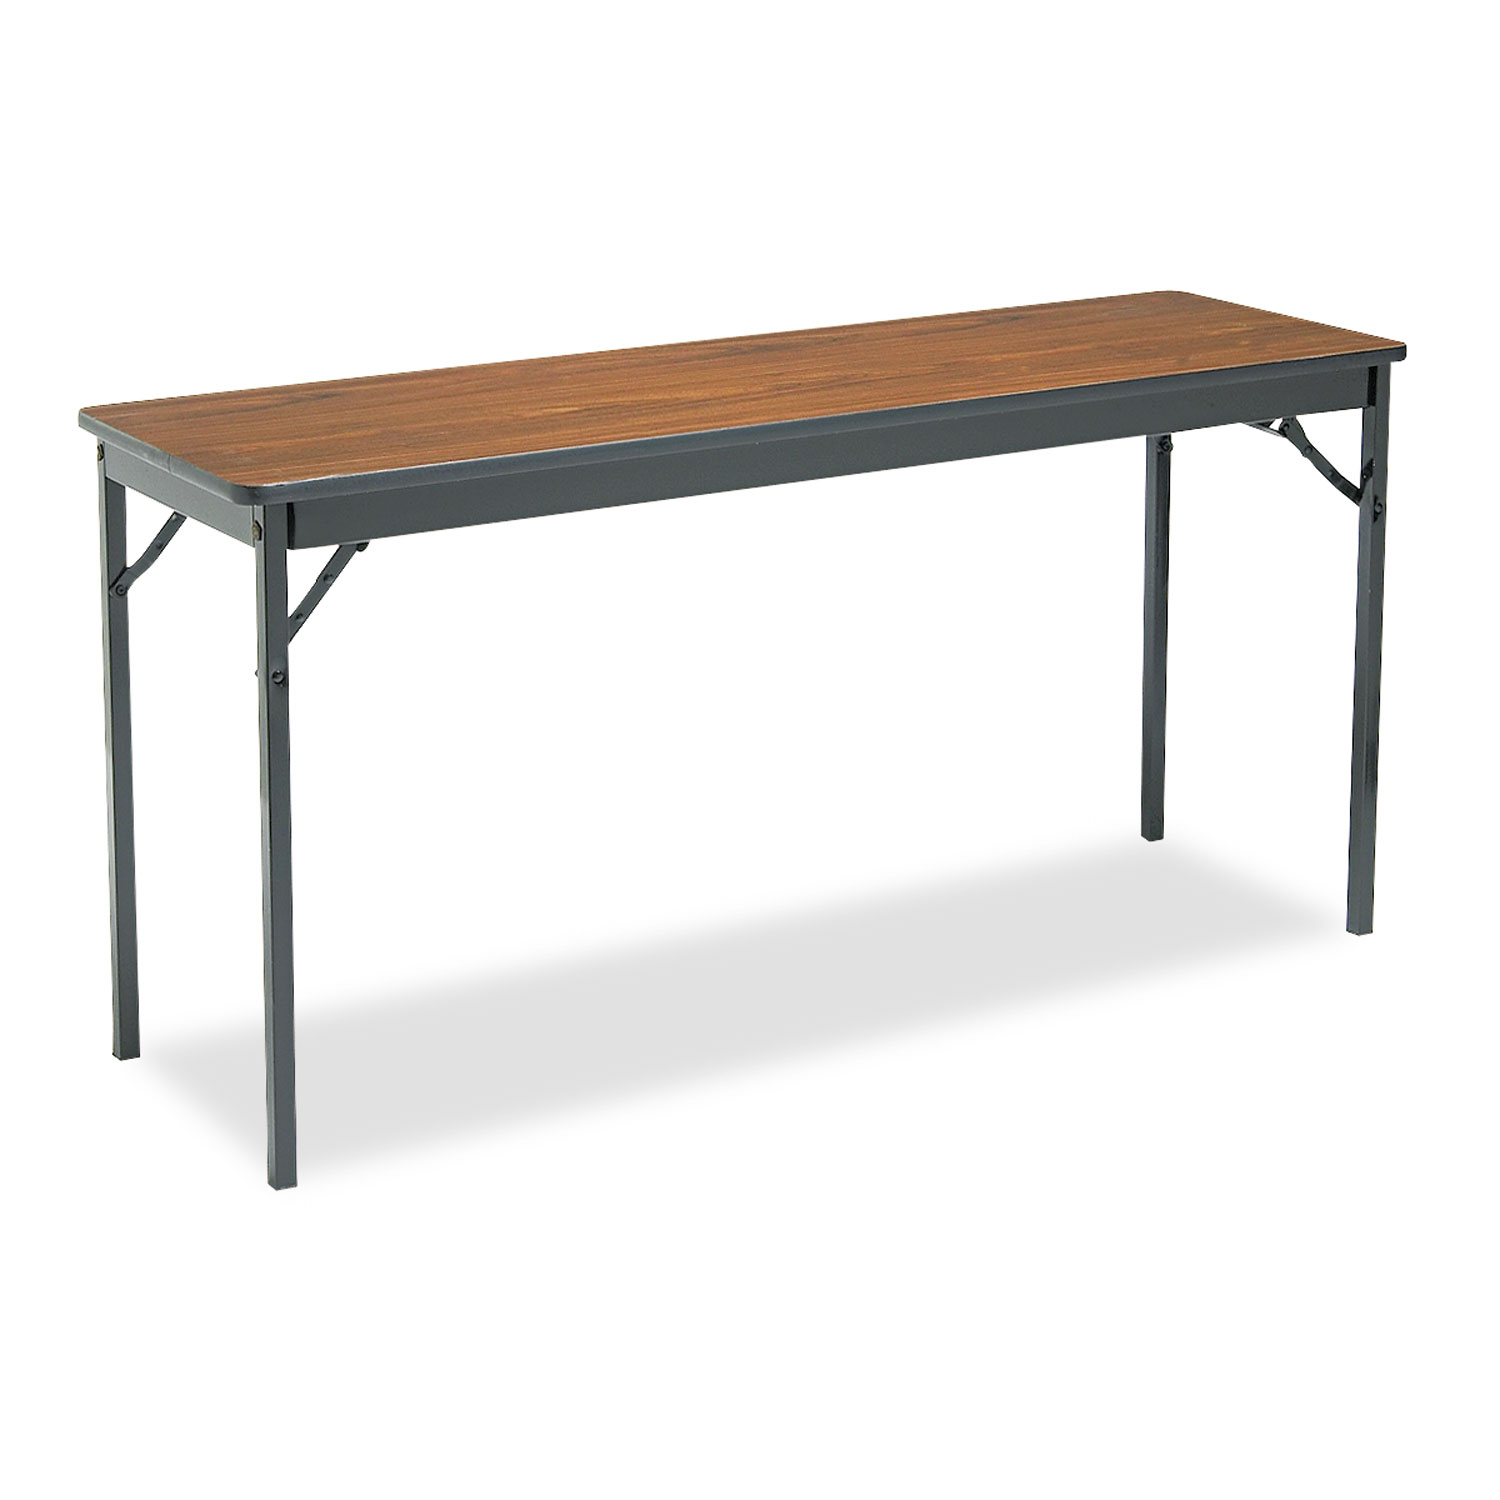  Barricks CL1860-WA Special Size Folding Table, Rectangular, 60w x 18d x 30h, Walnut/Black (BRKCL1860WA) 